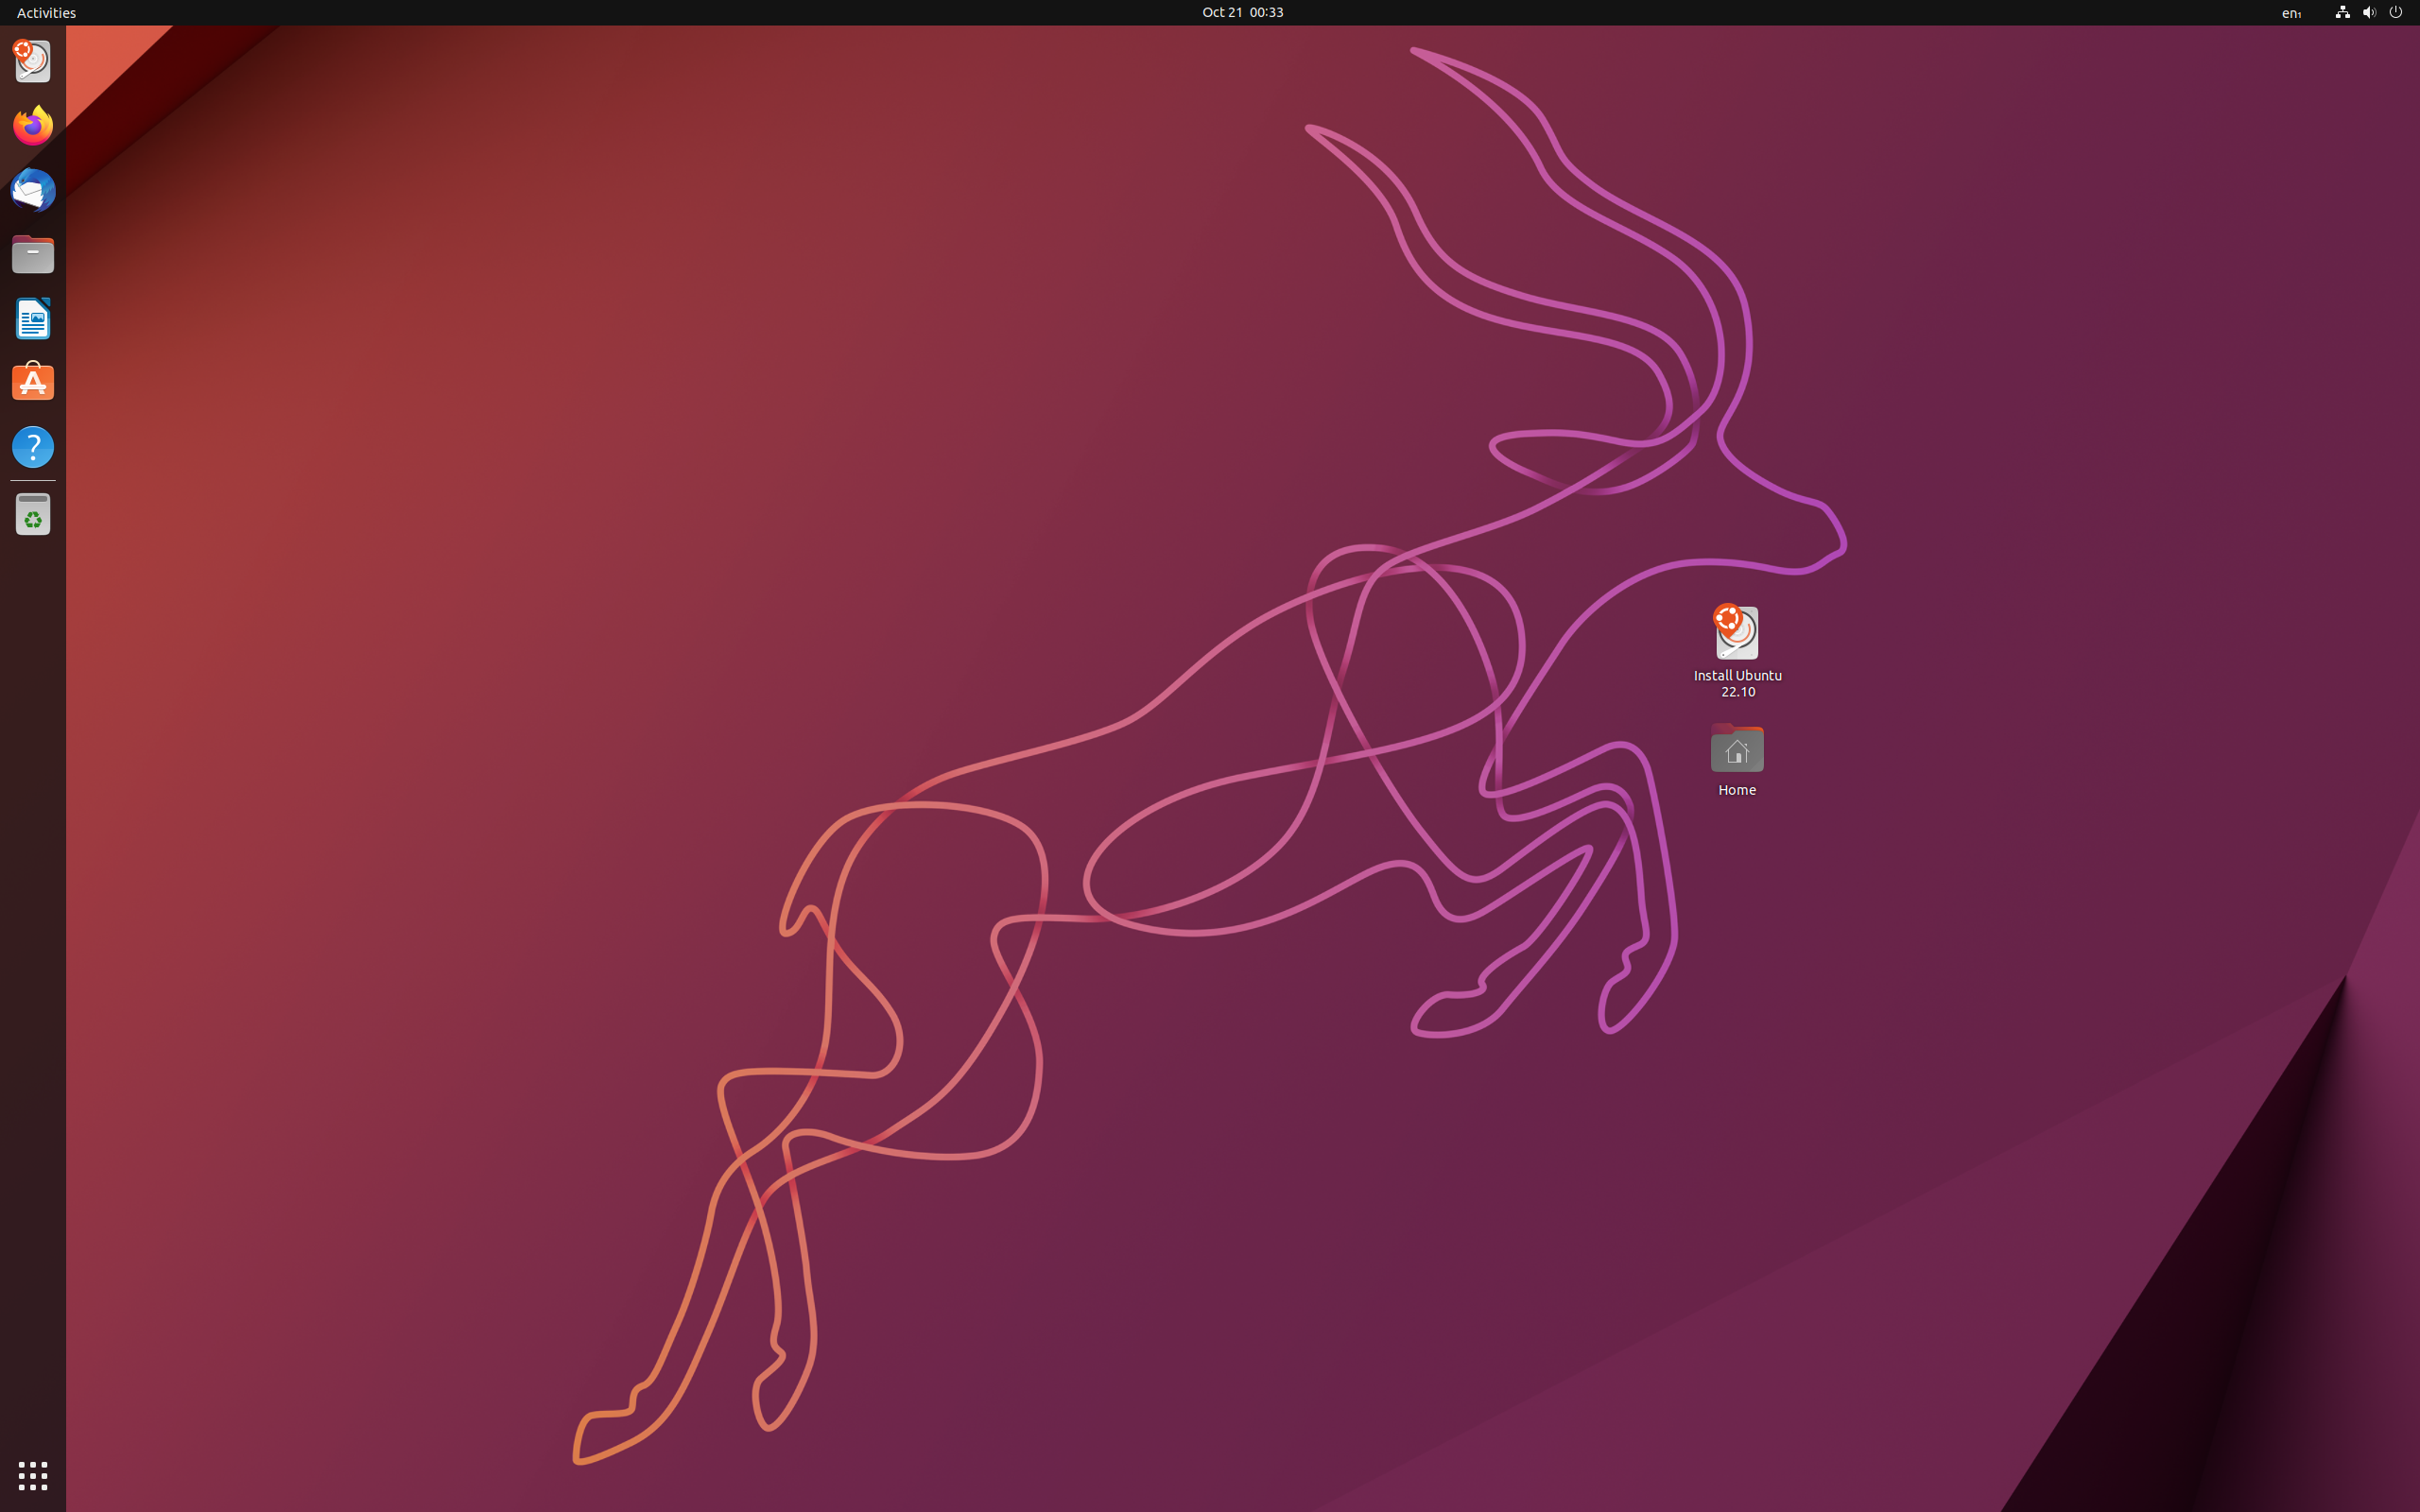 Rilasciata Ubuntu 22.10 “Kinetic Kudu” con GNOME 43 e Linux 5.19